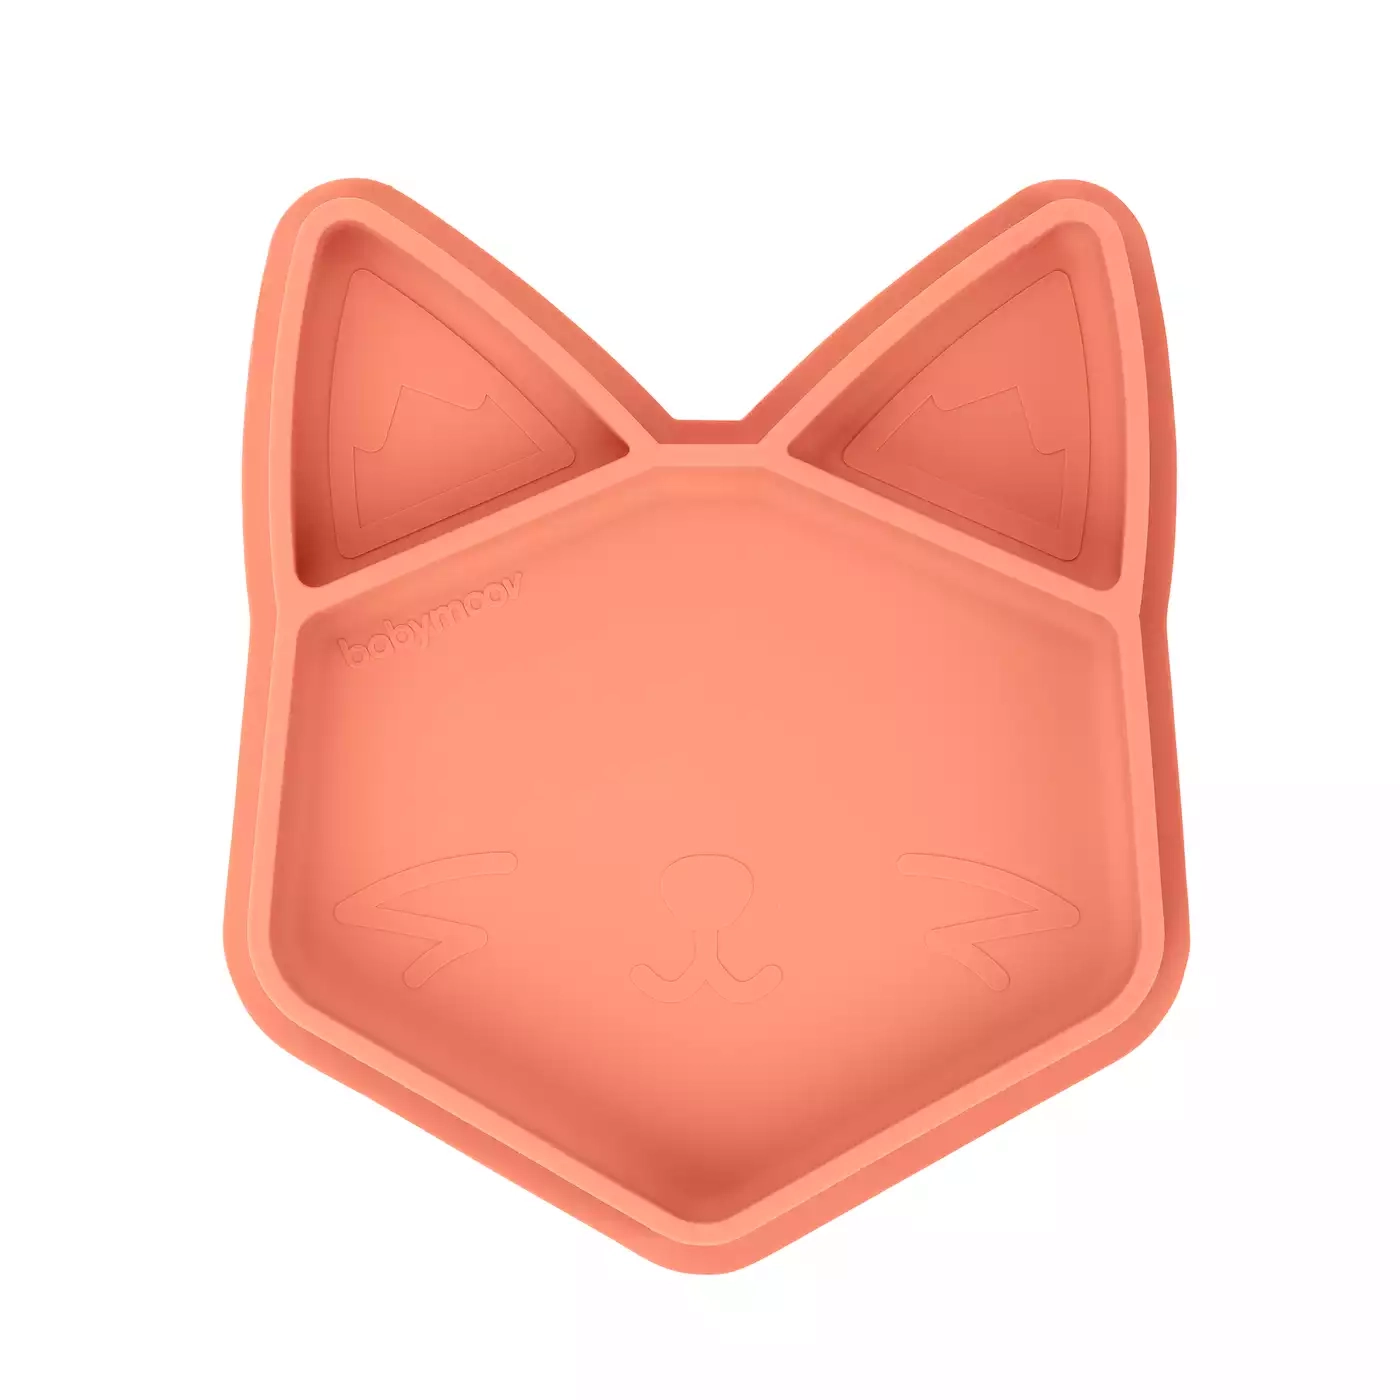 Silikonteller ISY Fox babymoov Orange 2000582387900 1